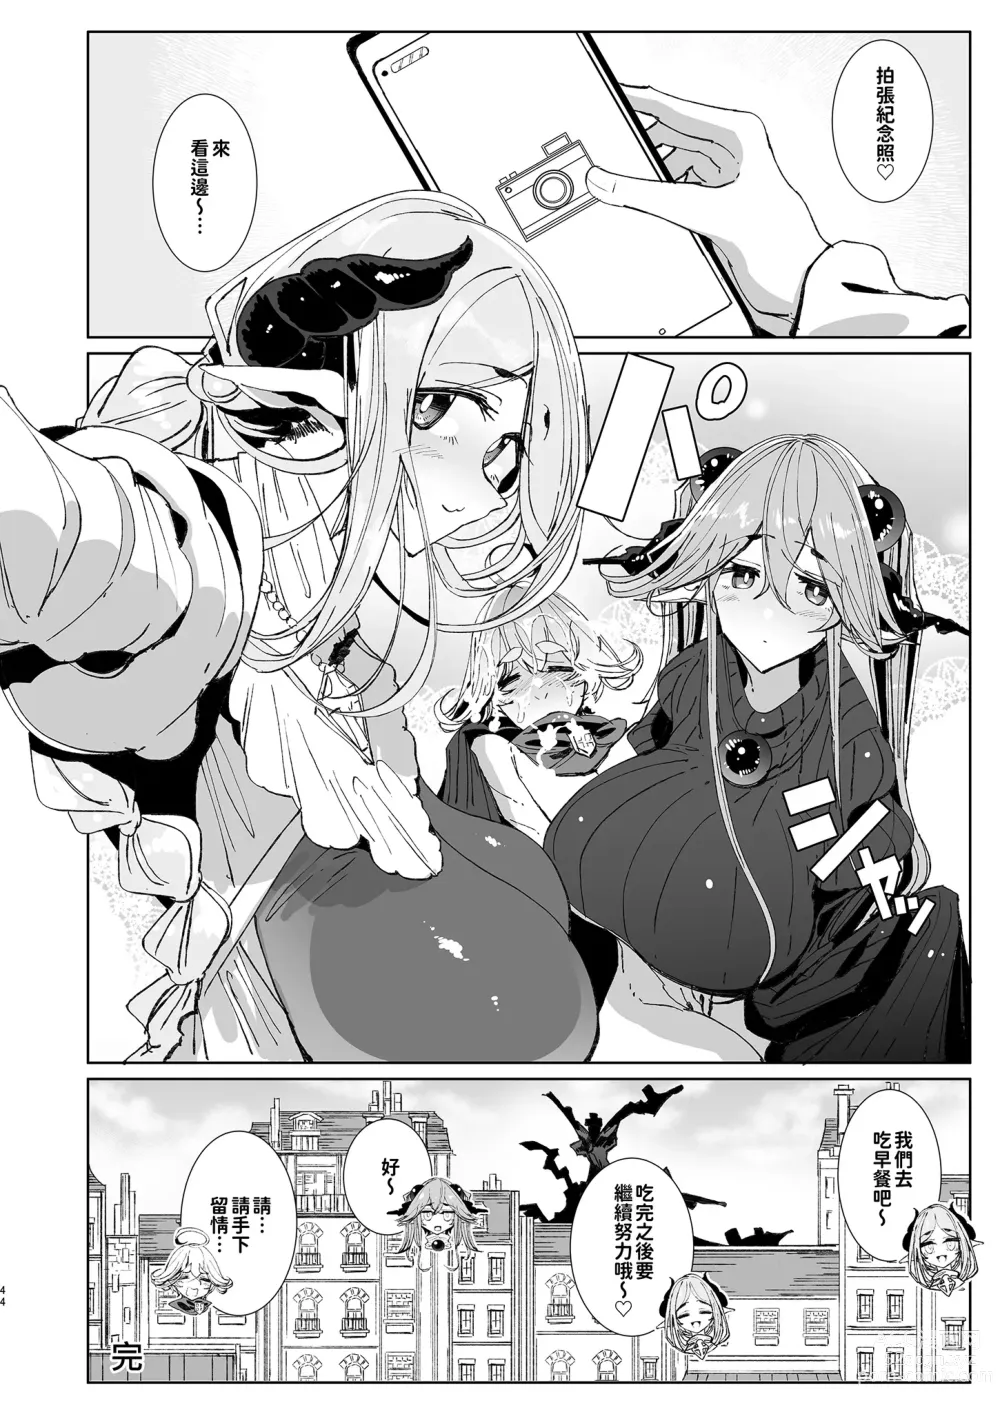 Page 44 of doujinshi 勇者和兩位扶她淫魔在討伐魔王後肯定要做那件事吧! (decensored)